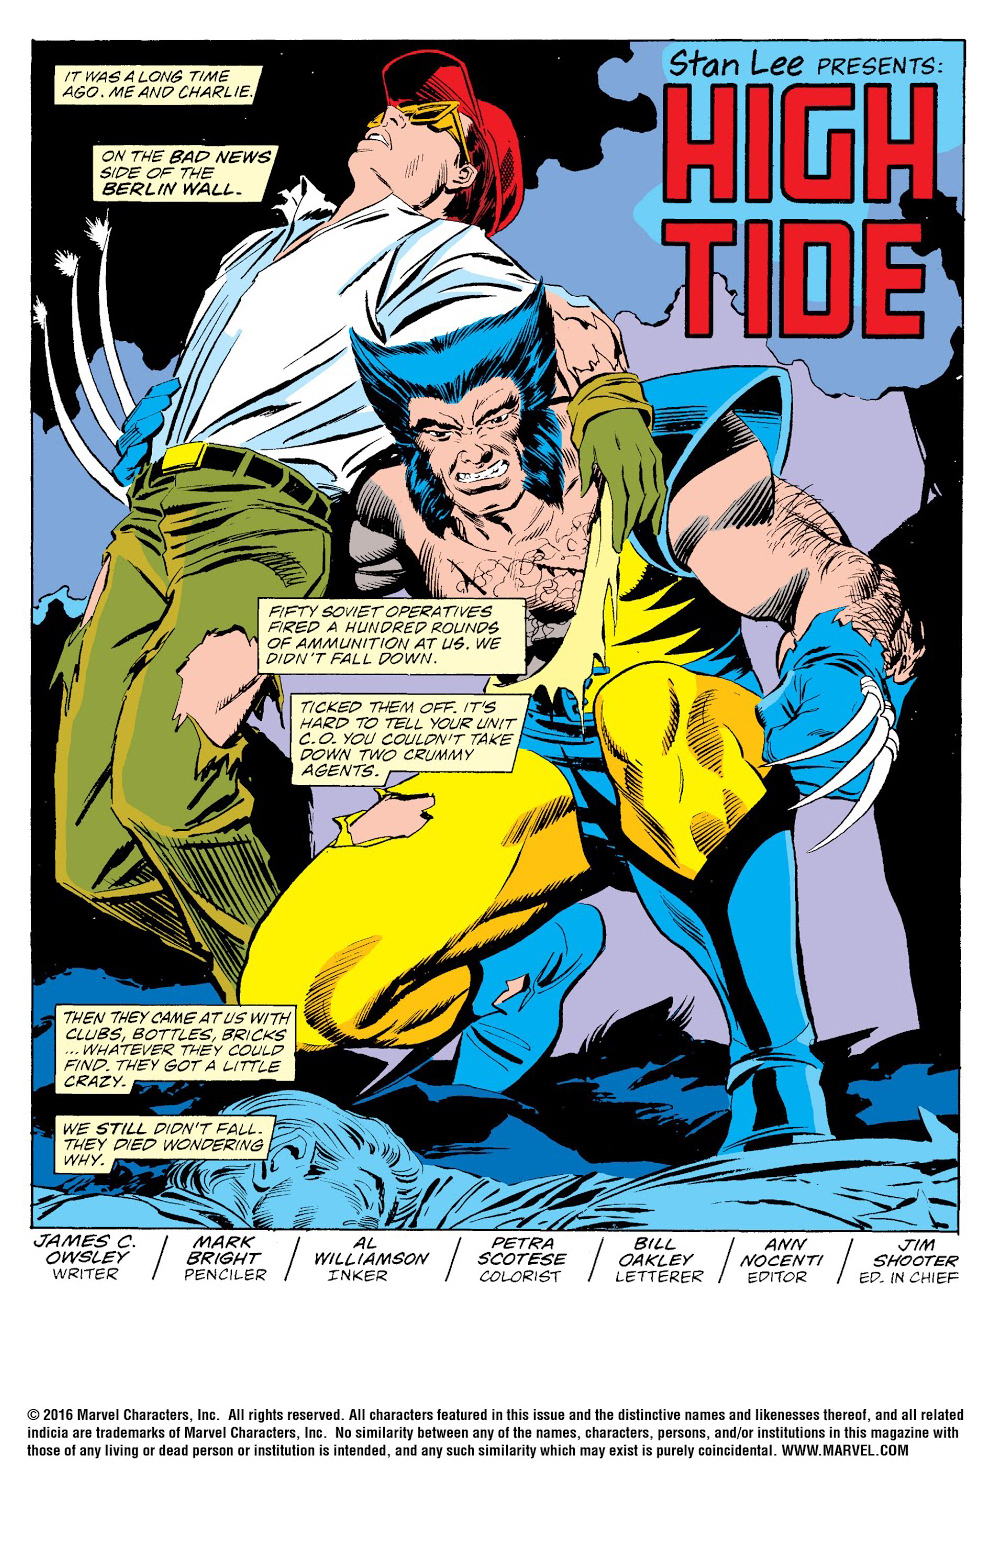 Spider-Man versus Wolverine | Spider-Man Online